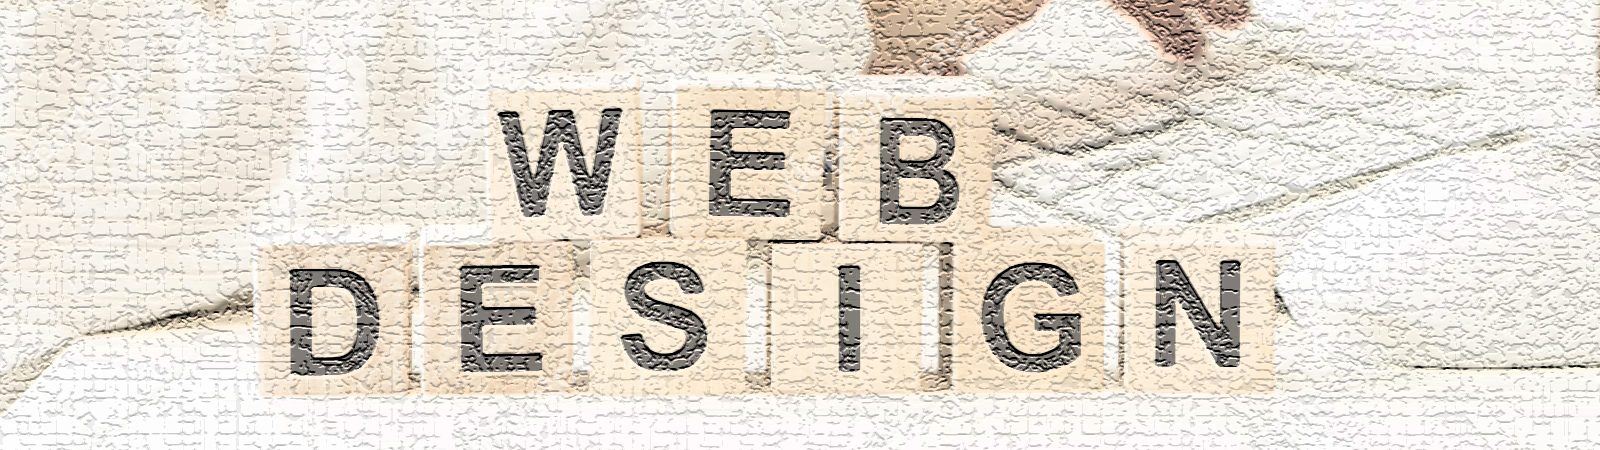 Webdesign Werbeagentur in Mittweida